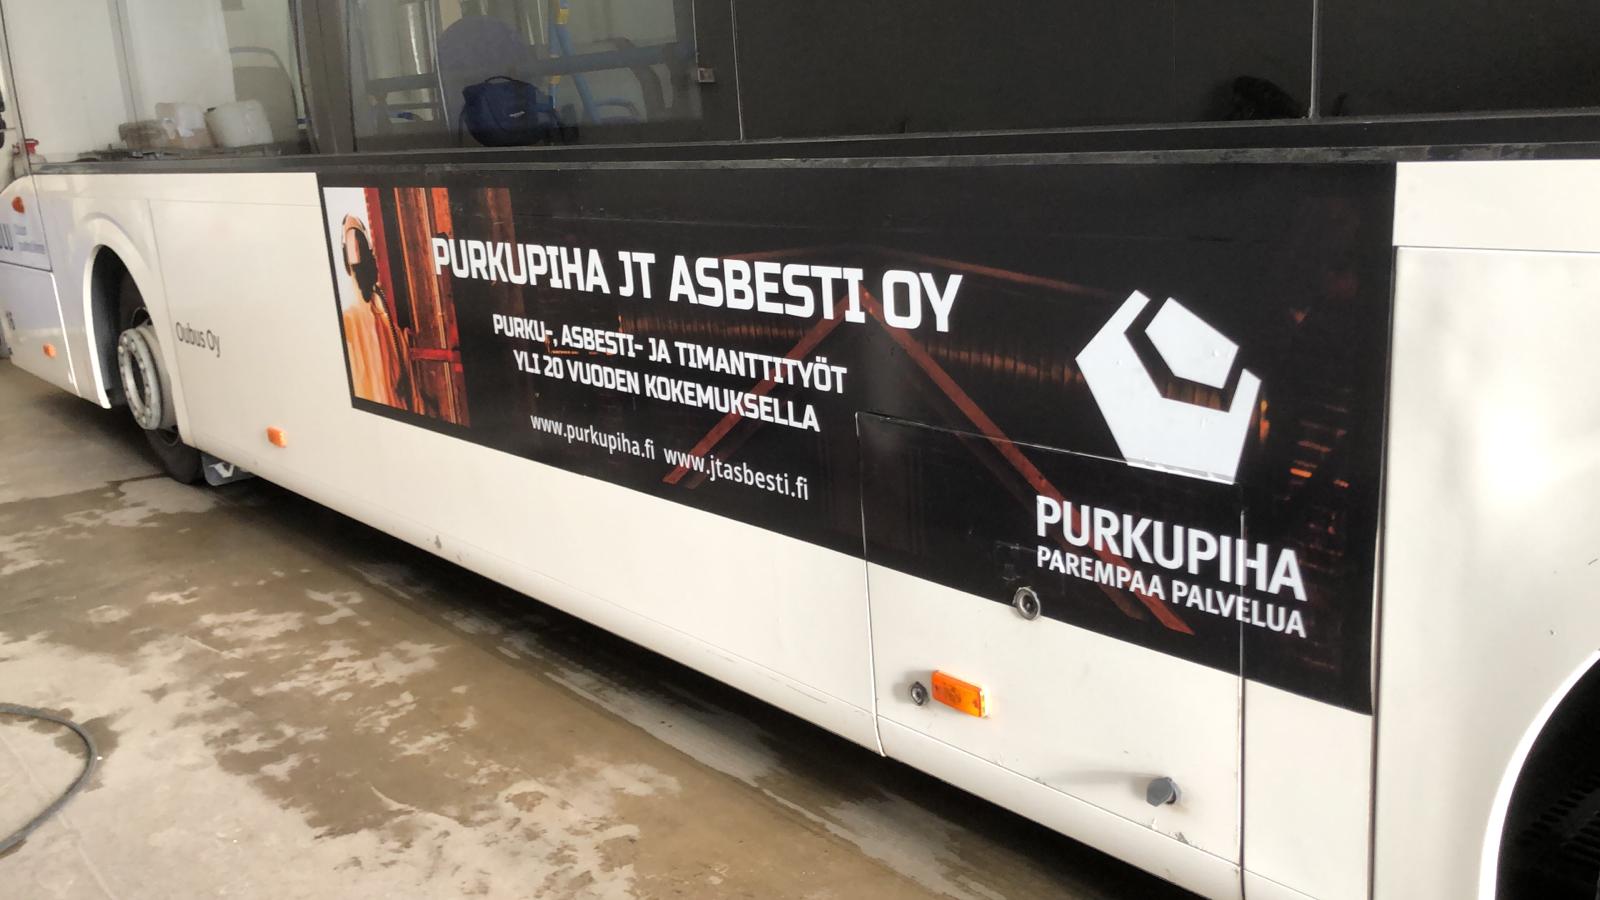 Bussimainonta | Kylkiteippaukset | Oulu-Kempele 6